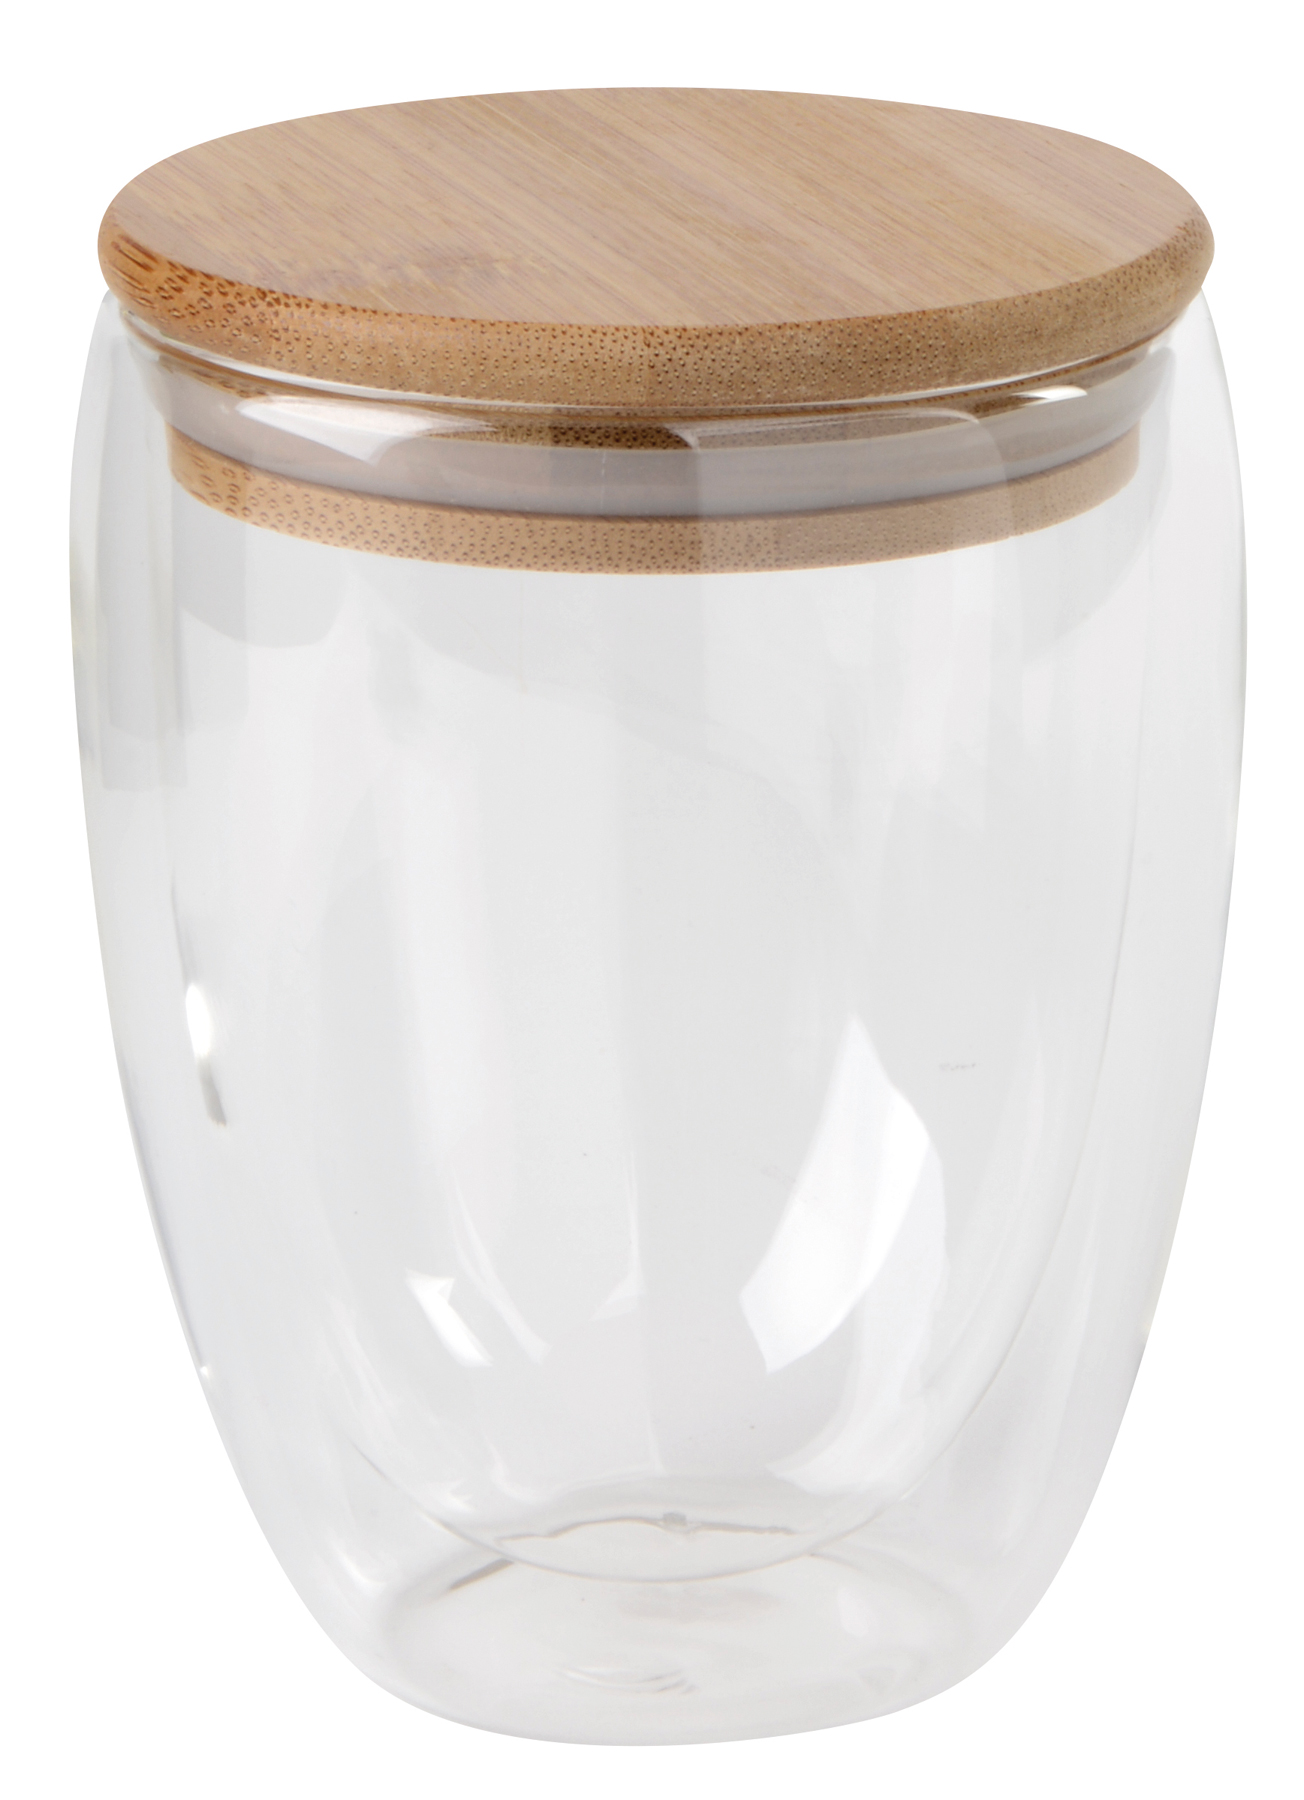 Dvouplášťová sklenice BAMBOO ART M s víčkem z bambusu: průhledné, odolné vůči teplotě, kapacita cca. 350 ml - hnedá